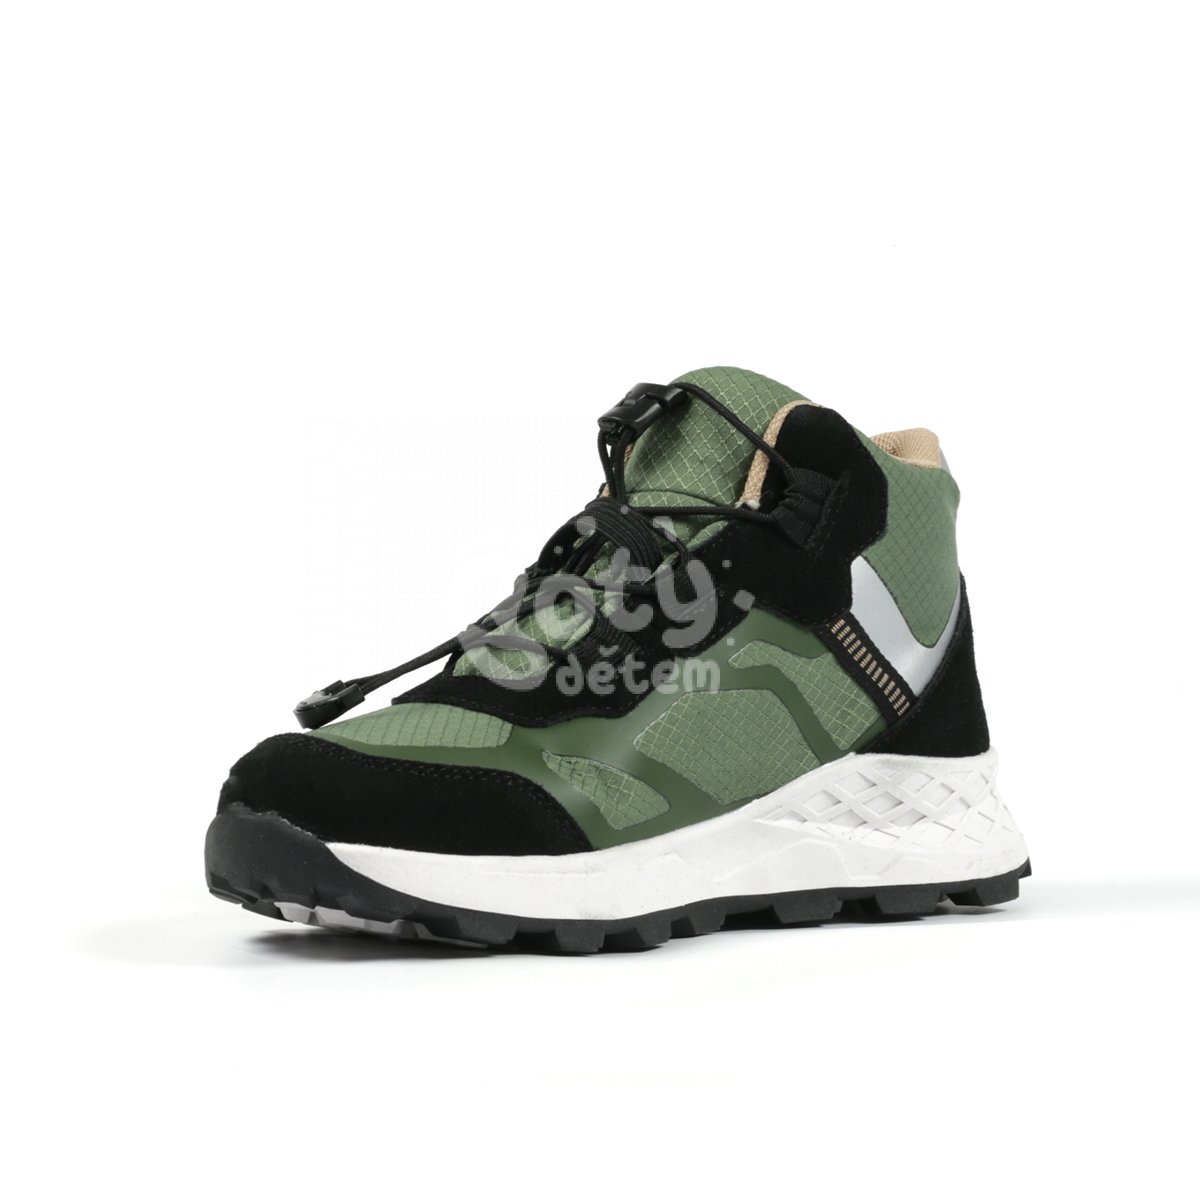 Sportovní obuv Richter Venture 7451-6192-8101 zelená